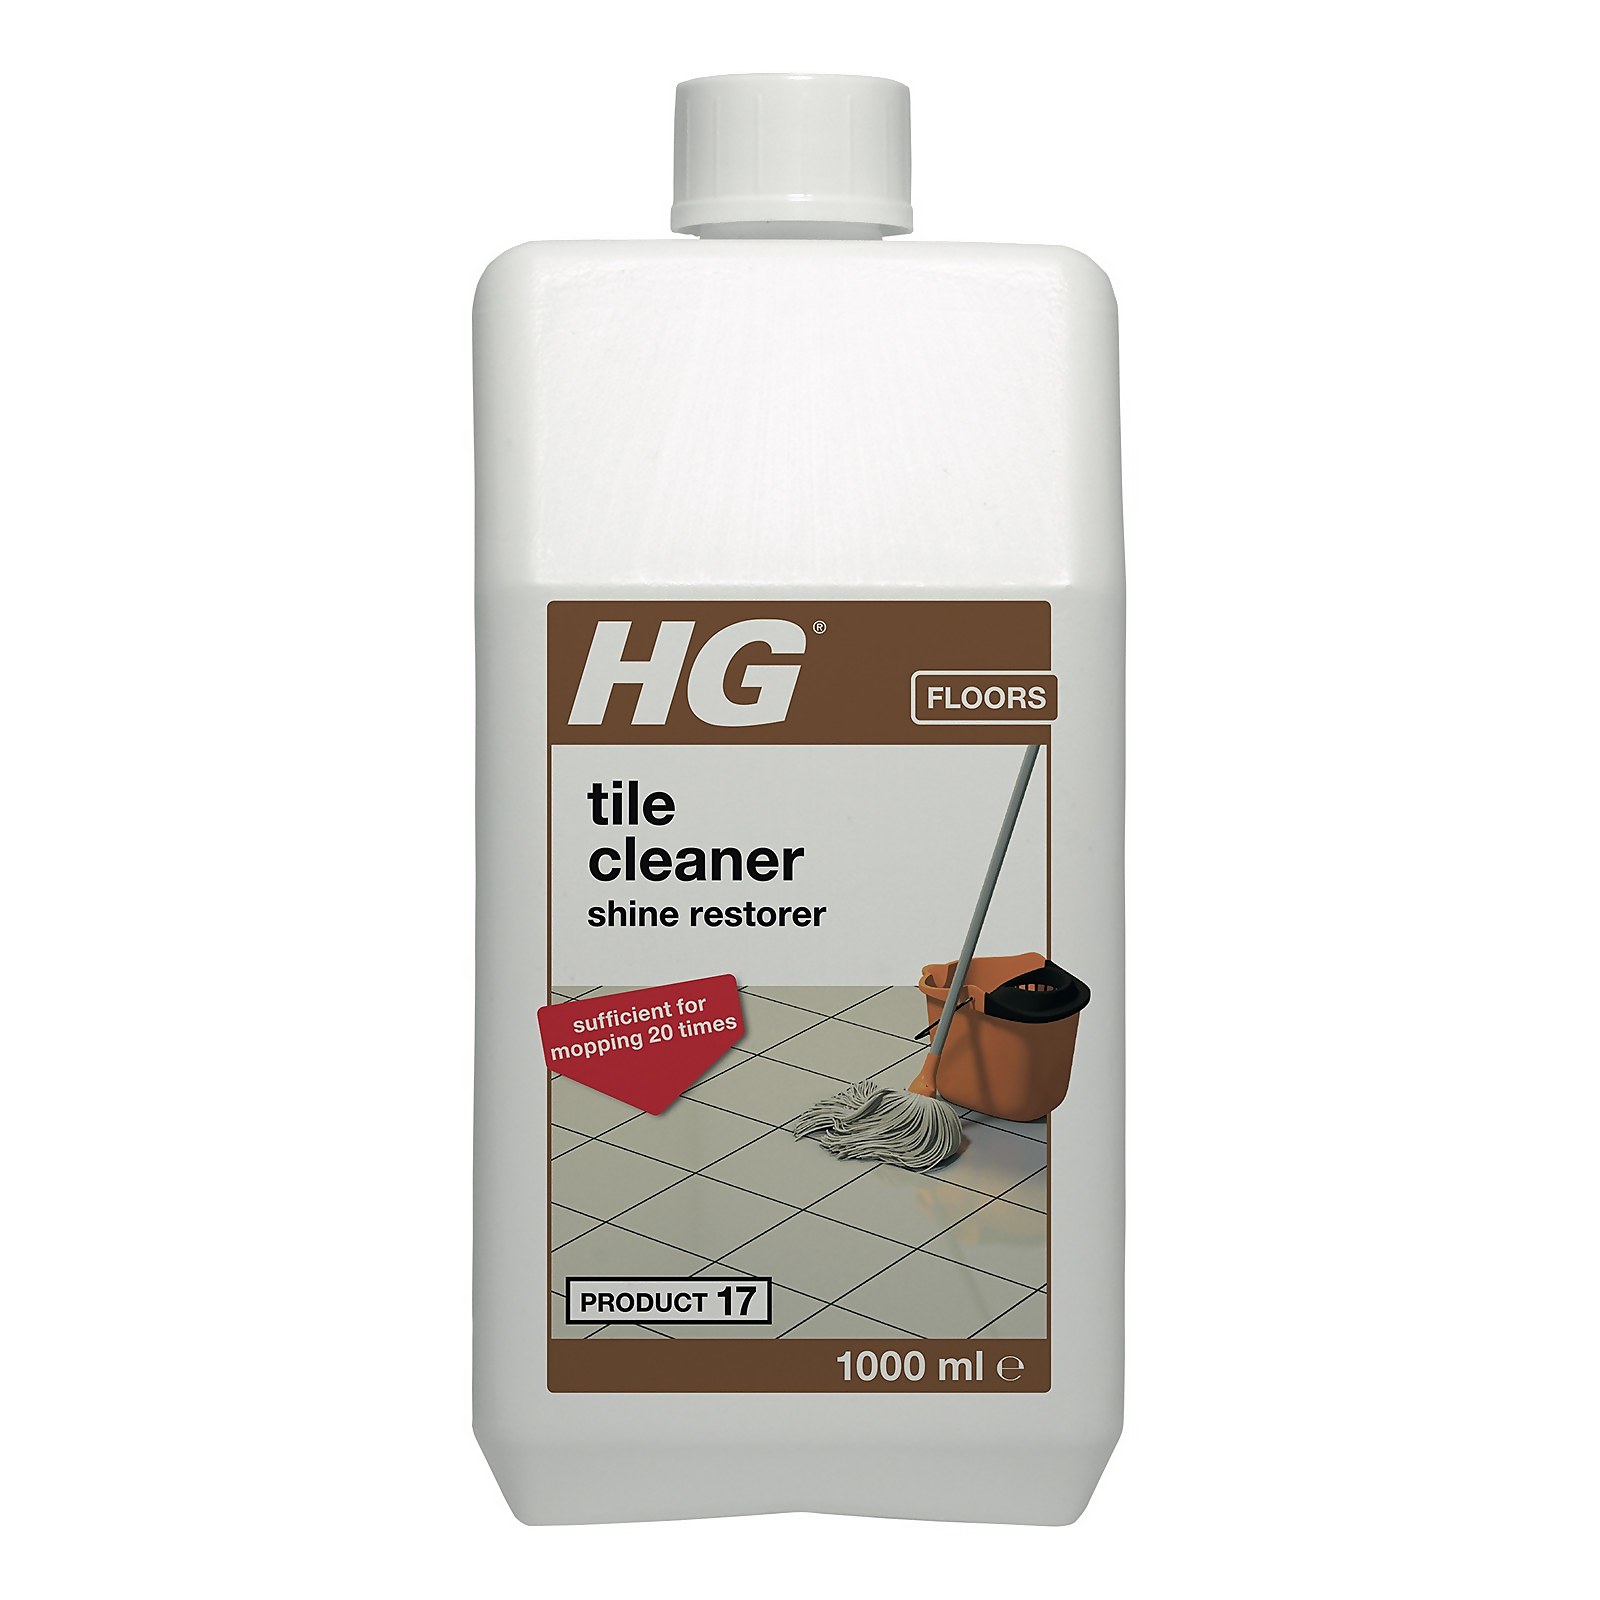 Photo of Hg Tile Cleaner Shine Restorer